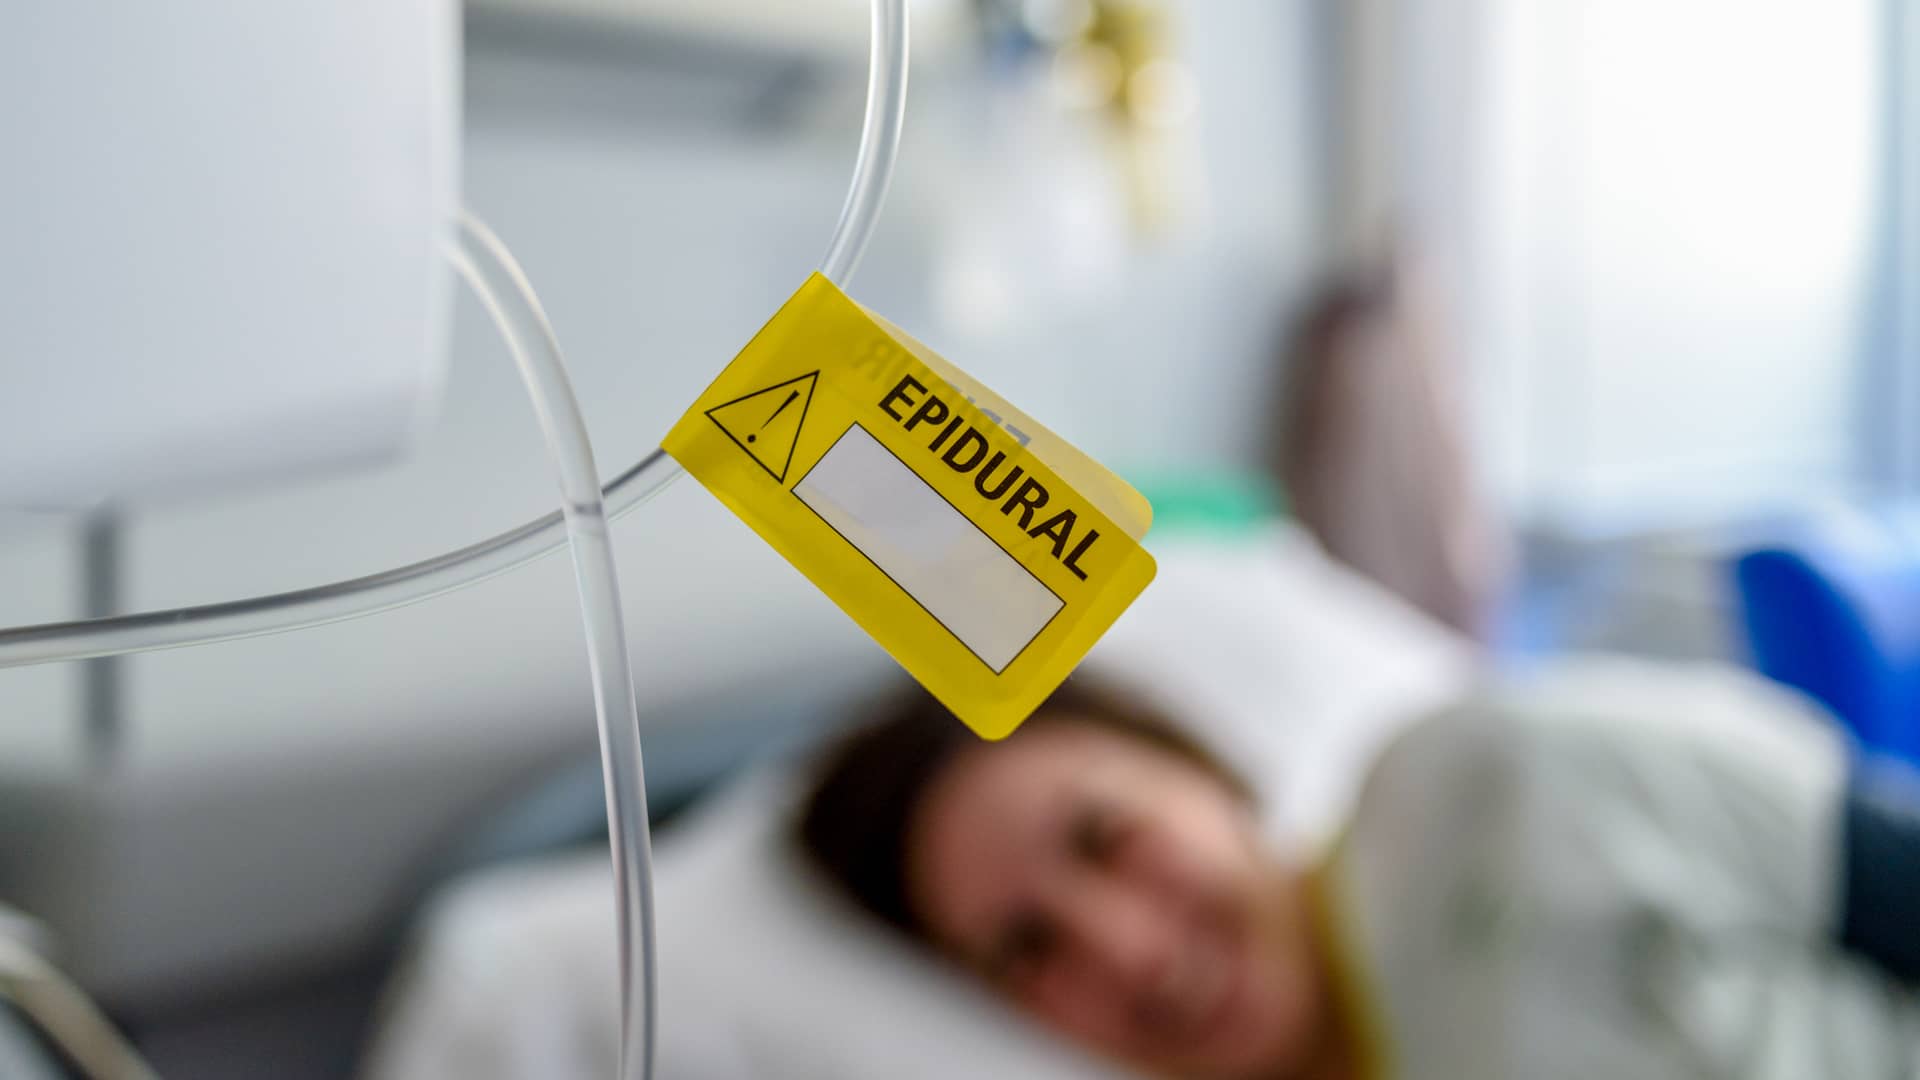 Etiqueta amarilla de la epidural en la habitación de hospital de una joven rato previo al parto de su bebé